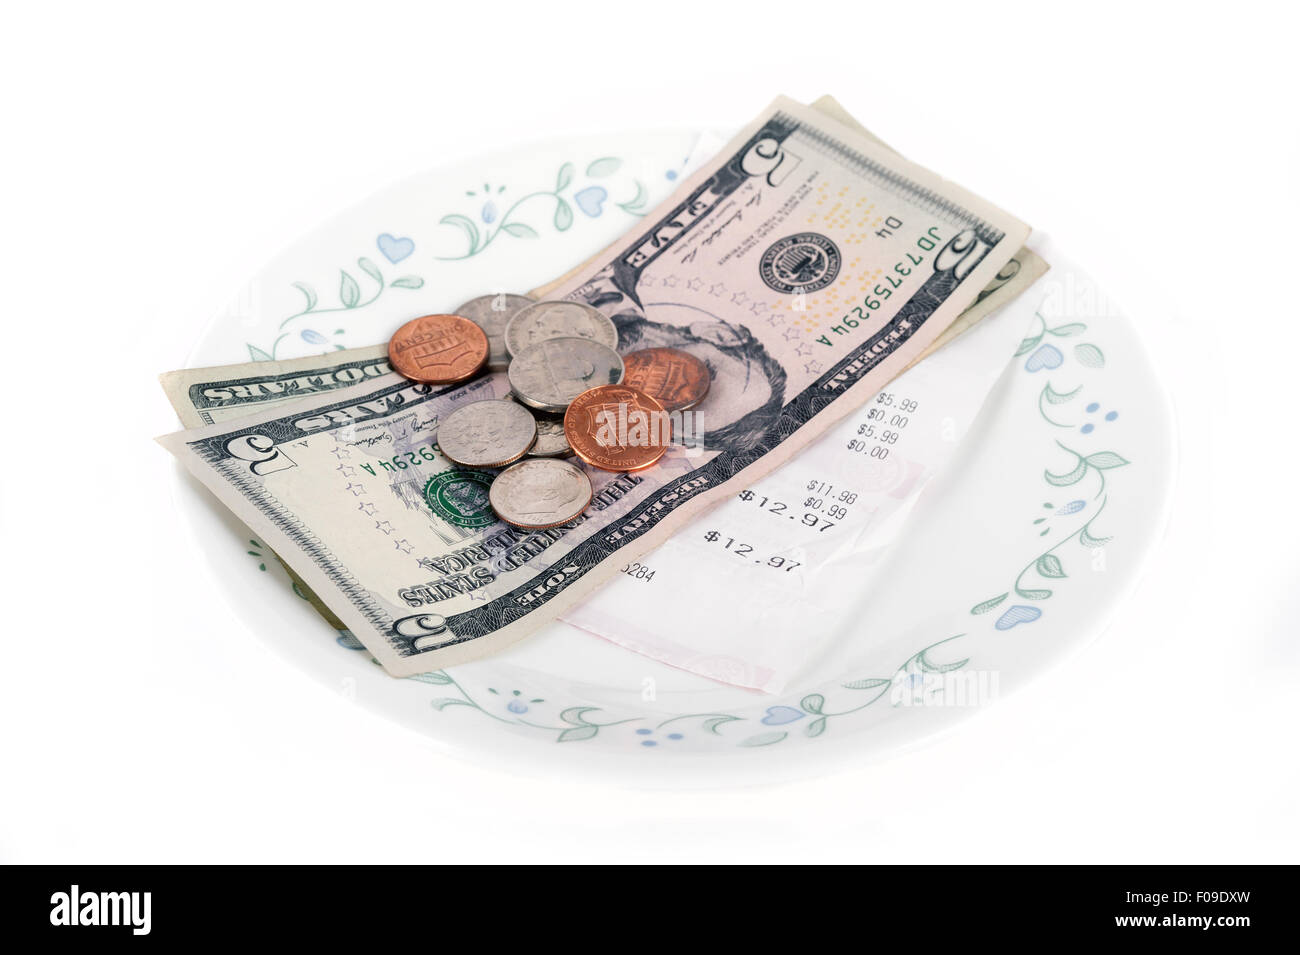 Facture de restaurant avec dollar bills (conseils) sur une plaque et la réception isolé sur fond blanc Banque D'Images